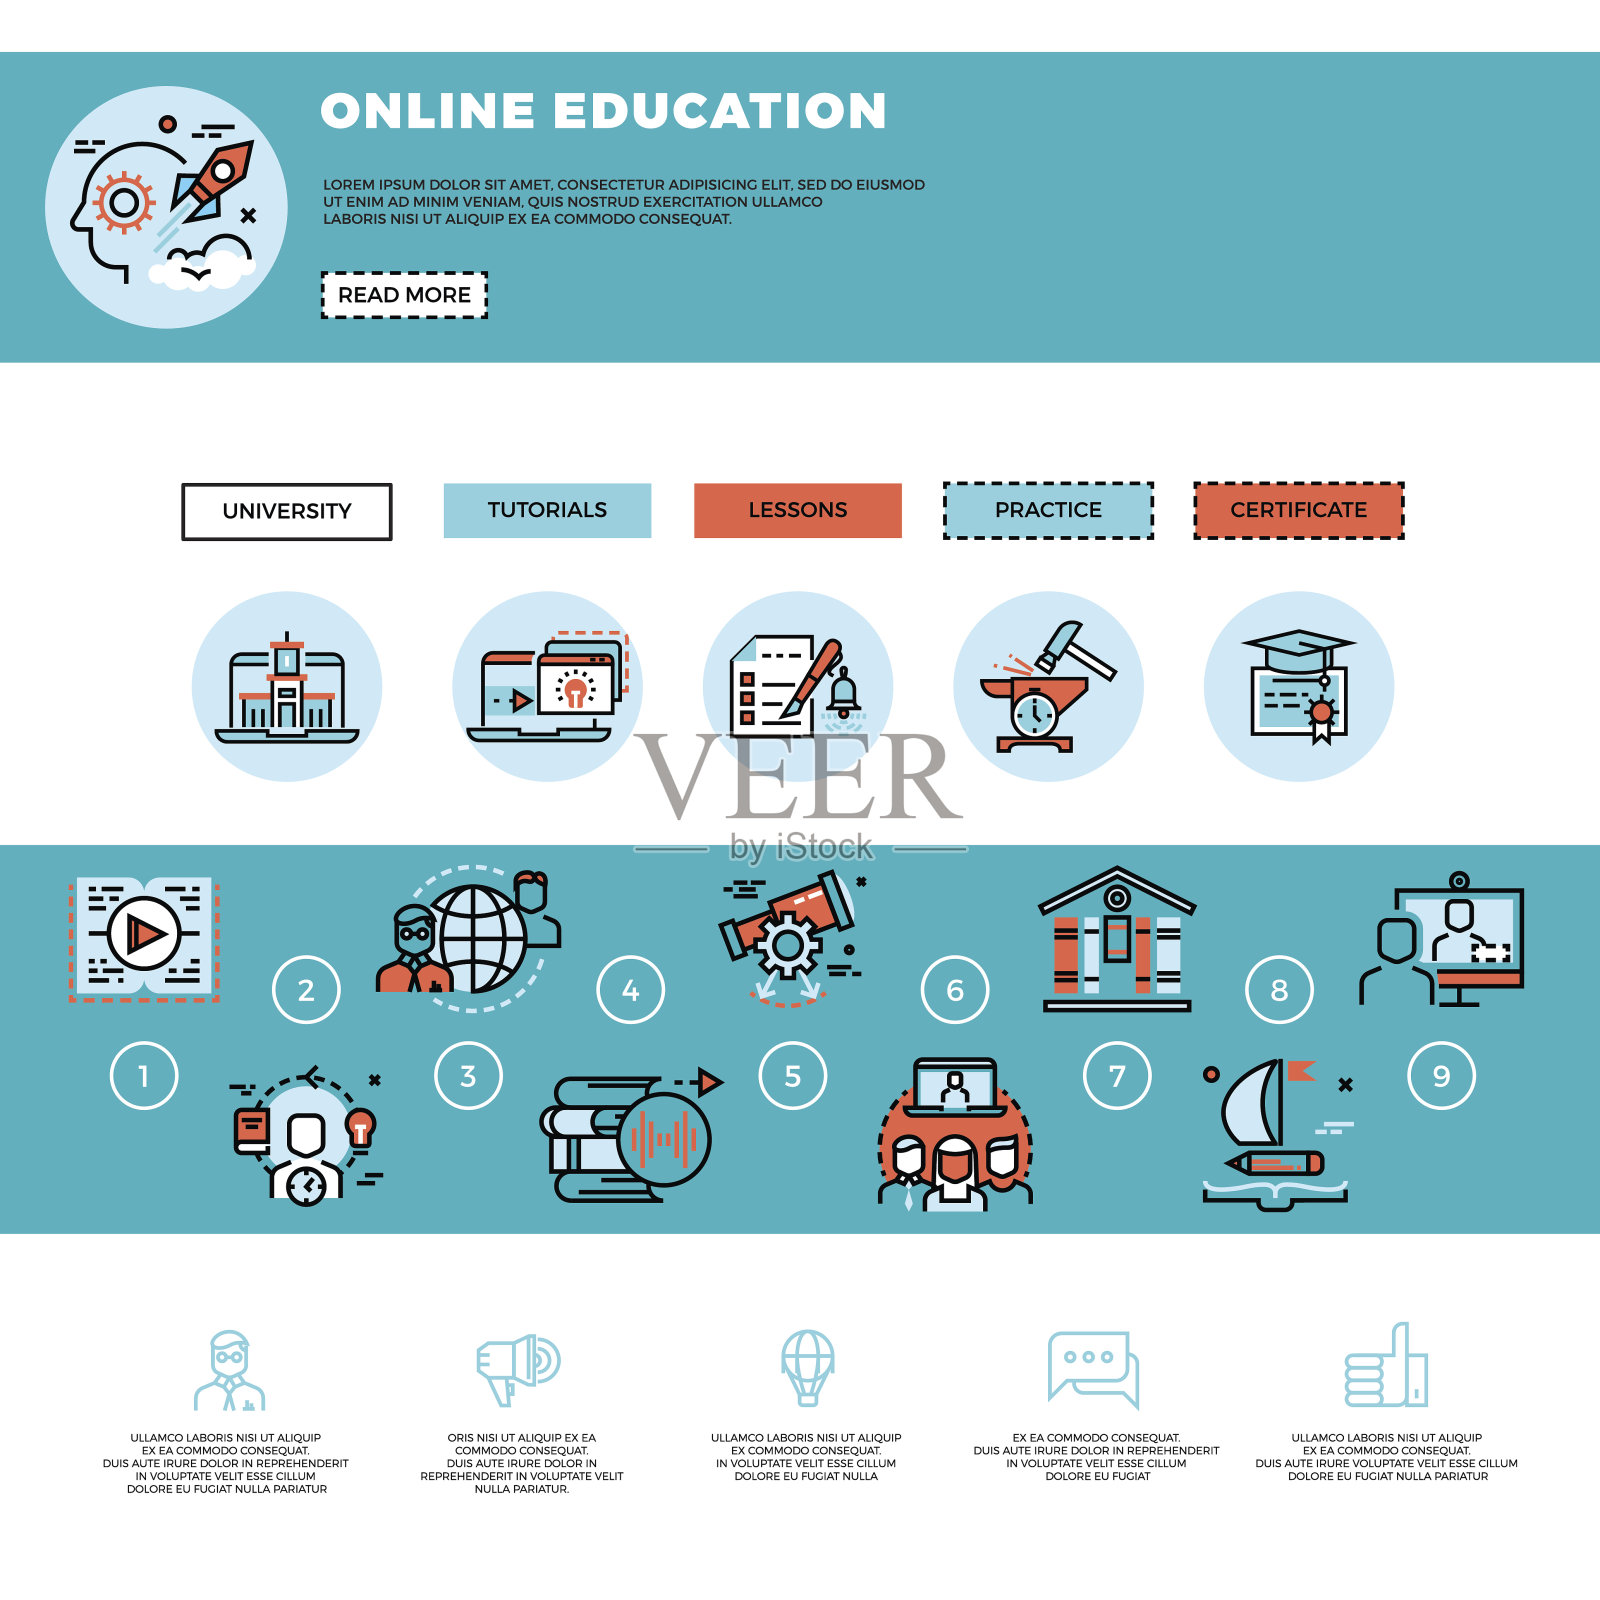 电子学习，教育或培训课程网页设计模板插画图片素材